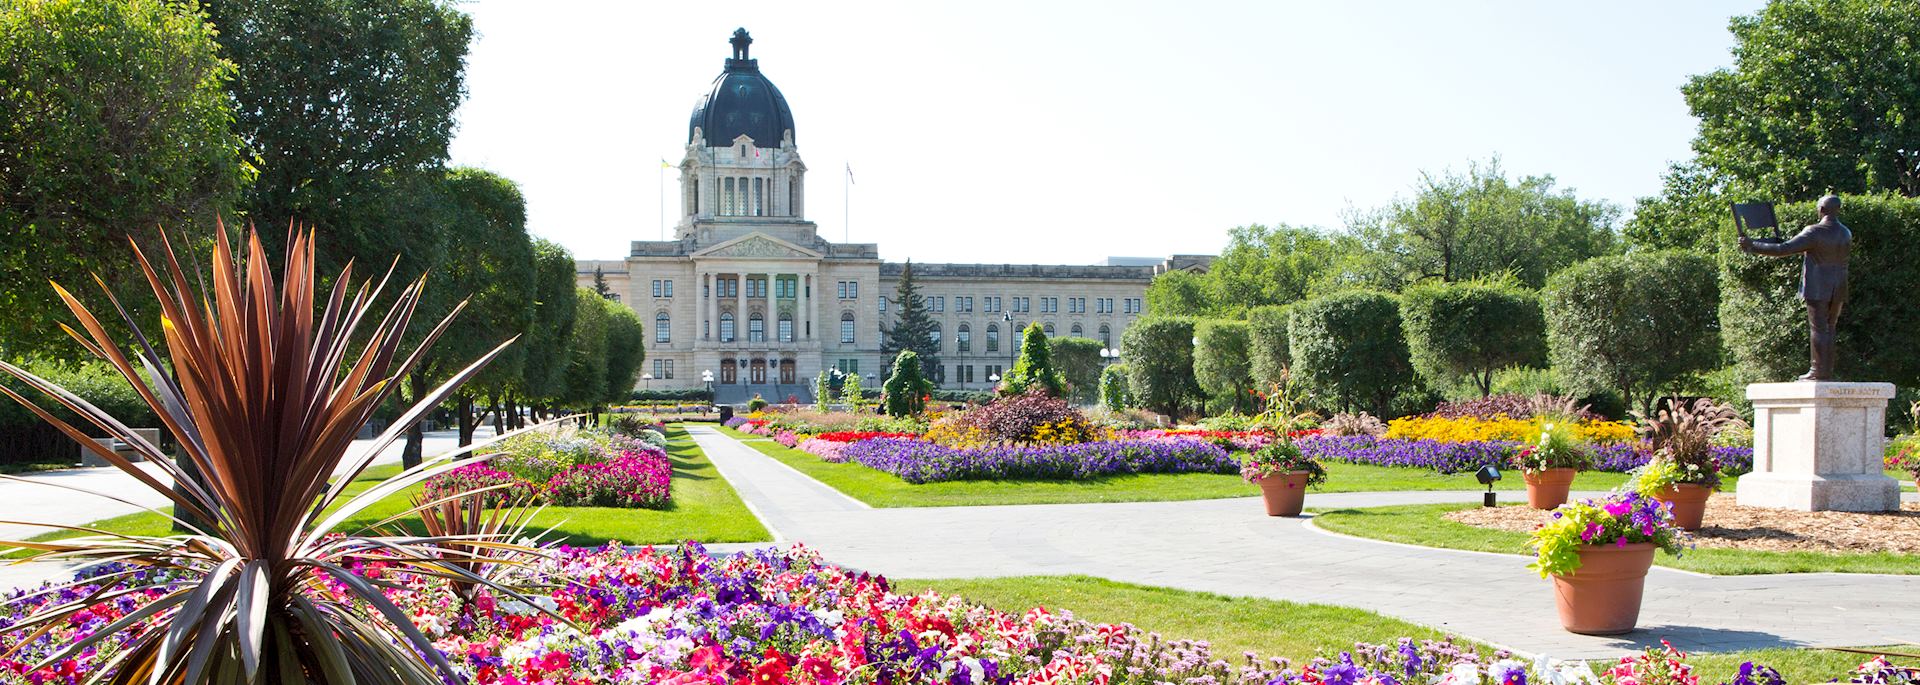 Saskatchewan Legislative Building, Regina